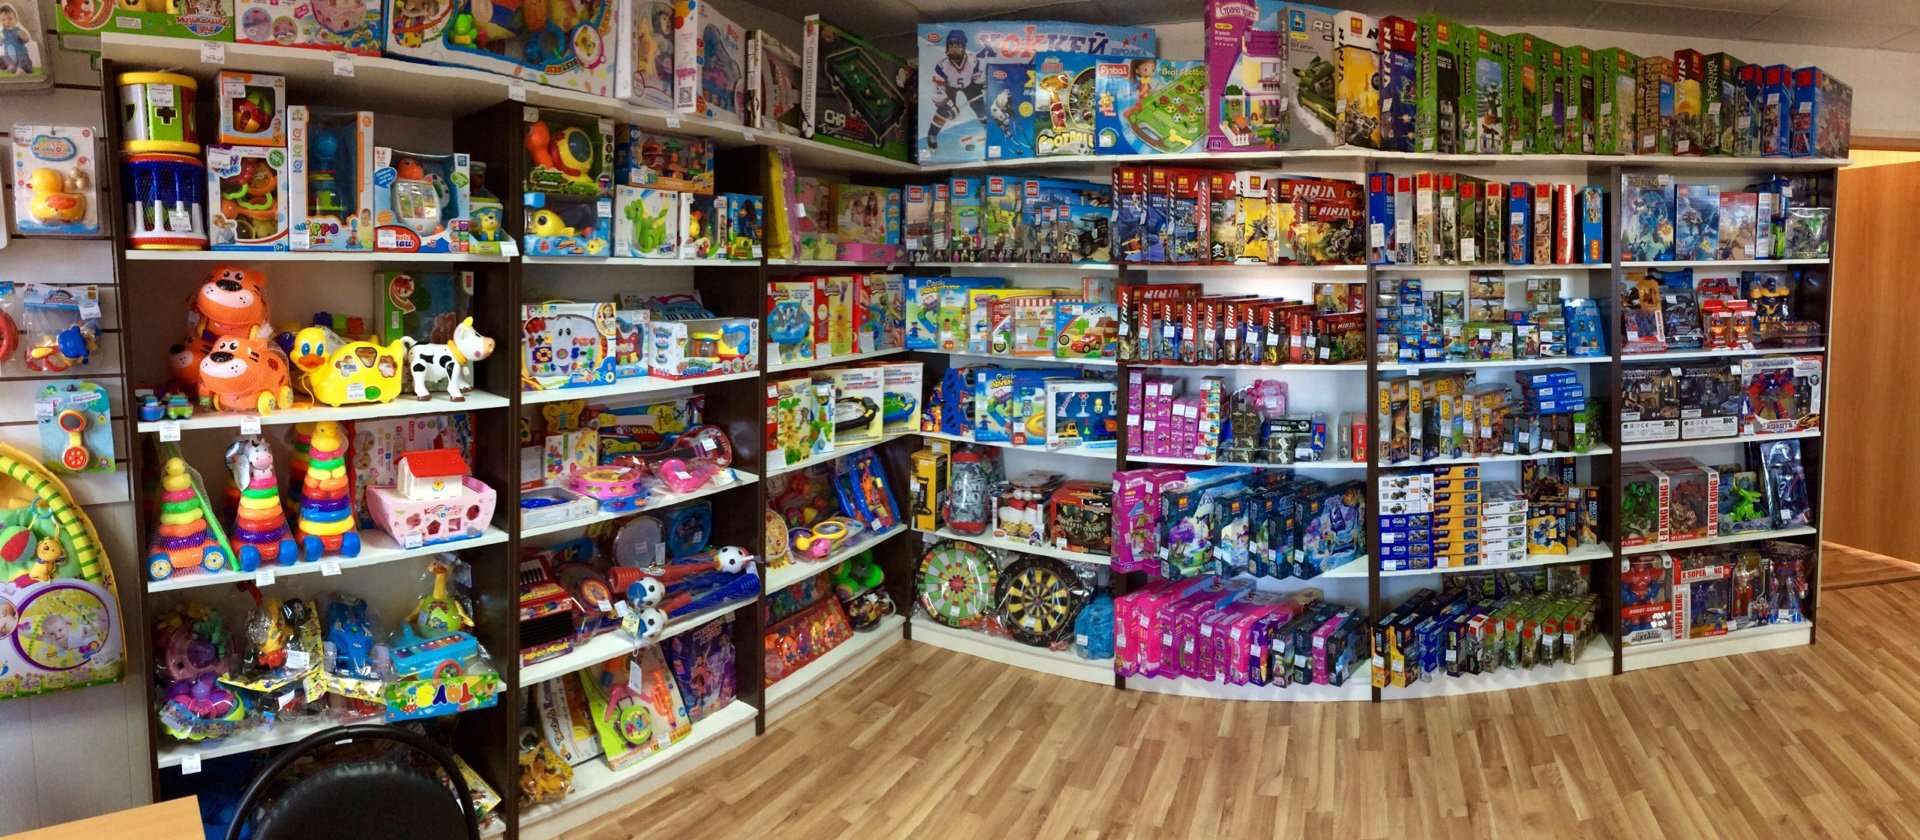 Маленький магазин игры. Оптовый магазин игрушек. Склад магазина игрушек. Детский магазин игрушек. Полки с игрушками в магазине.